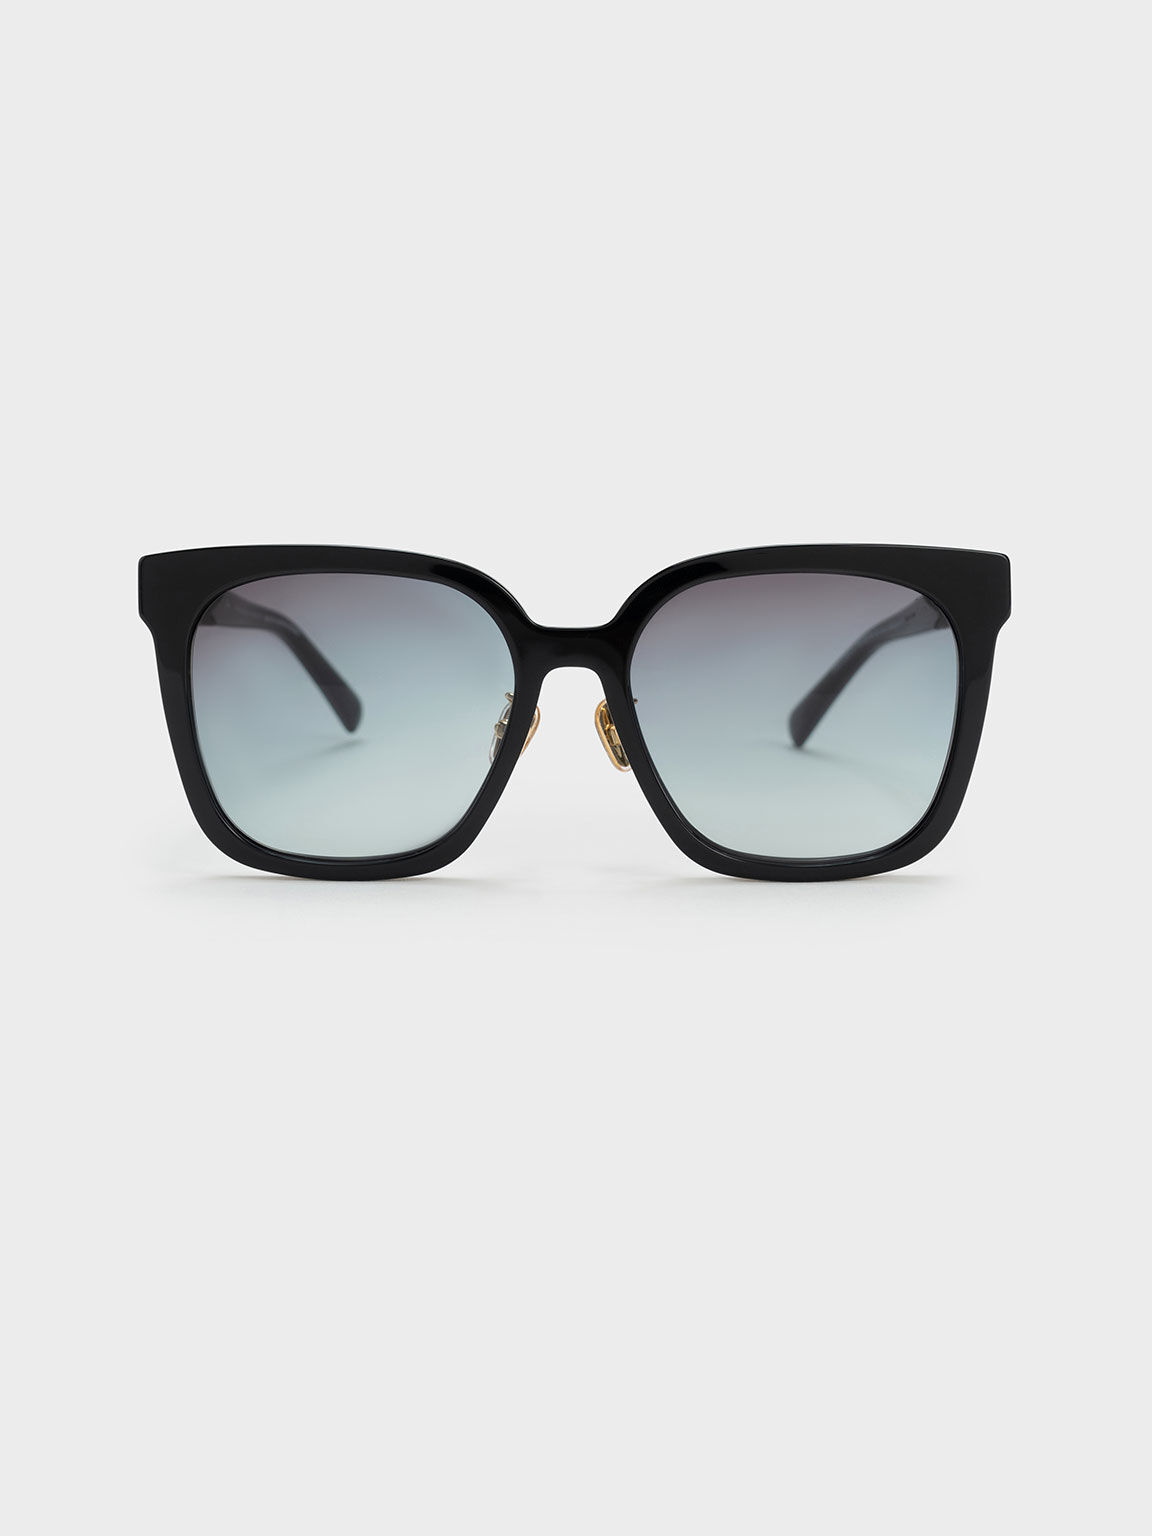 漸層膠框貓眼墨鏡, 黑色, hi-res